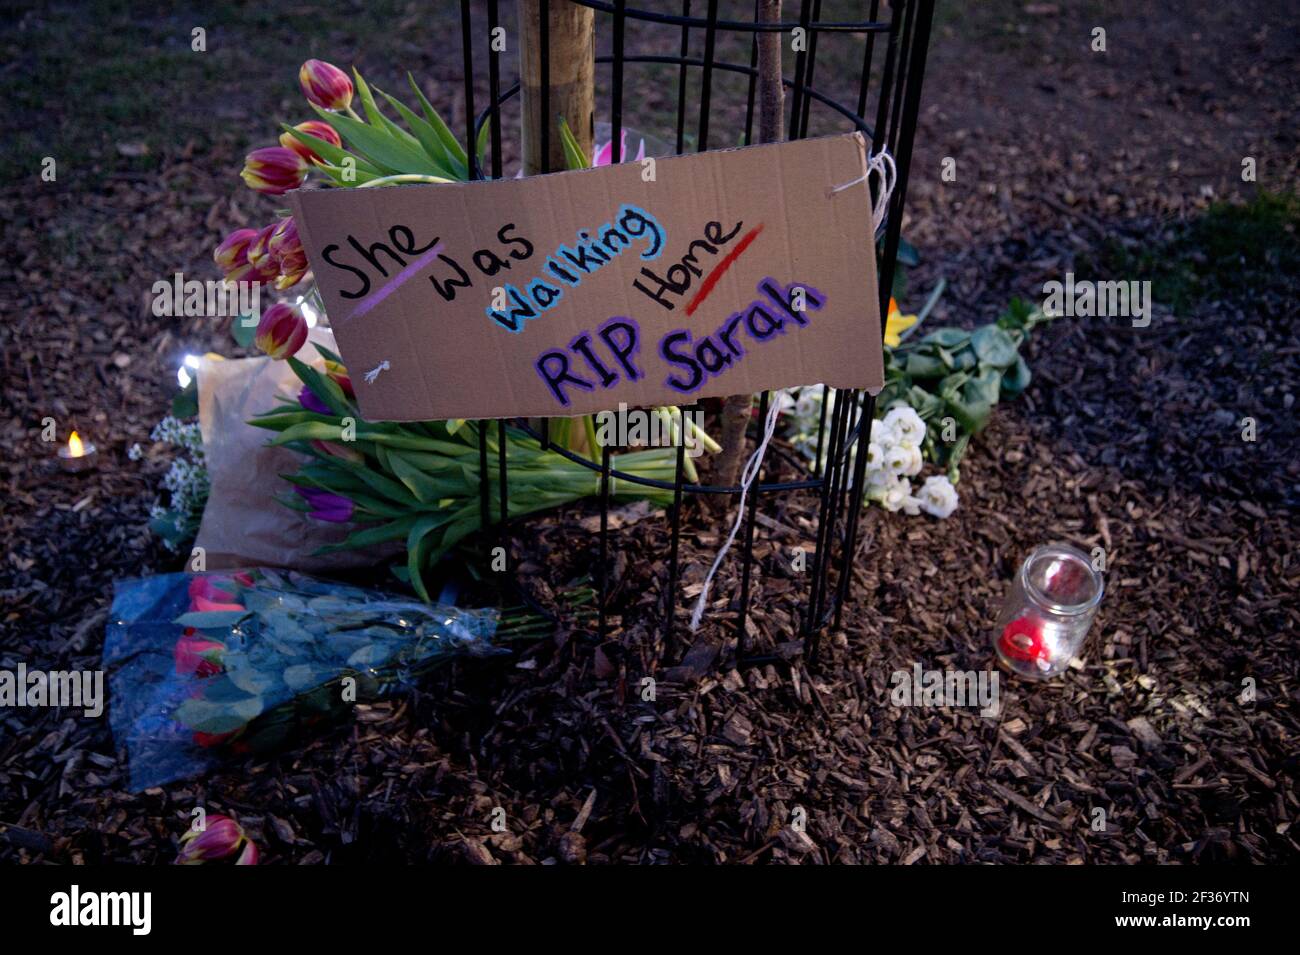 London Fields, Hackney 13/03/2021 Vigil pour Sarah Everard, un policier en service, a été accusé de son meurtre. Un écriteau indique qu'il était juste à pied Banque D'Images